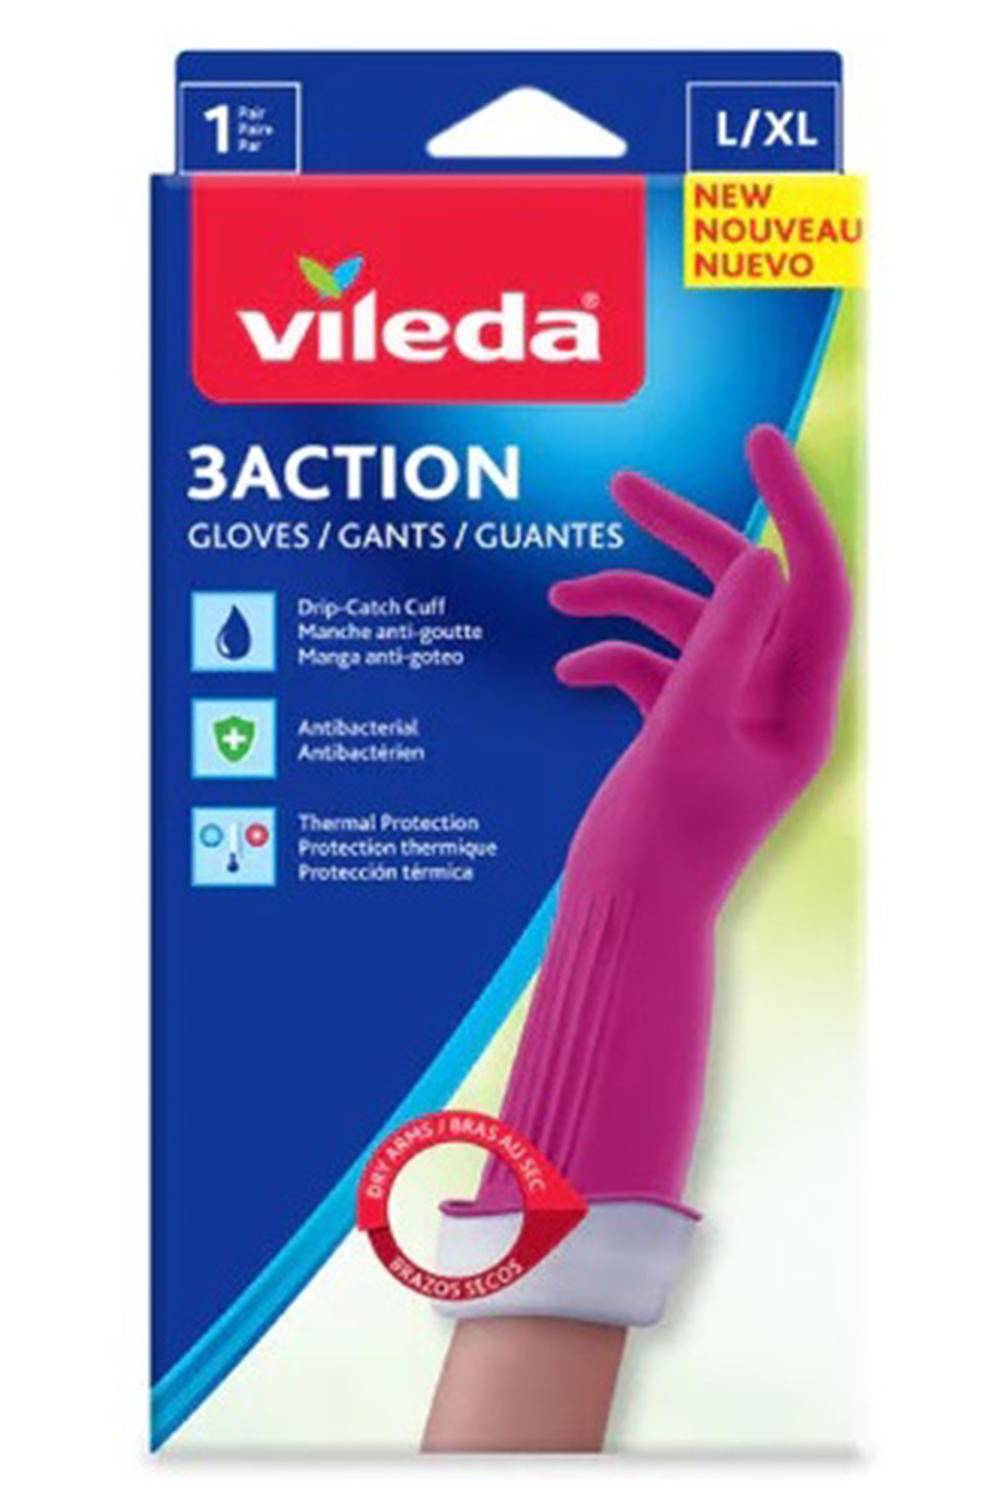 VILEDA - Guante 3 action  L/XL